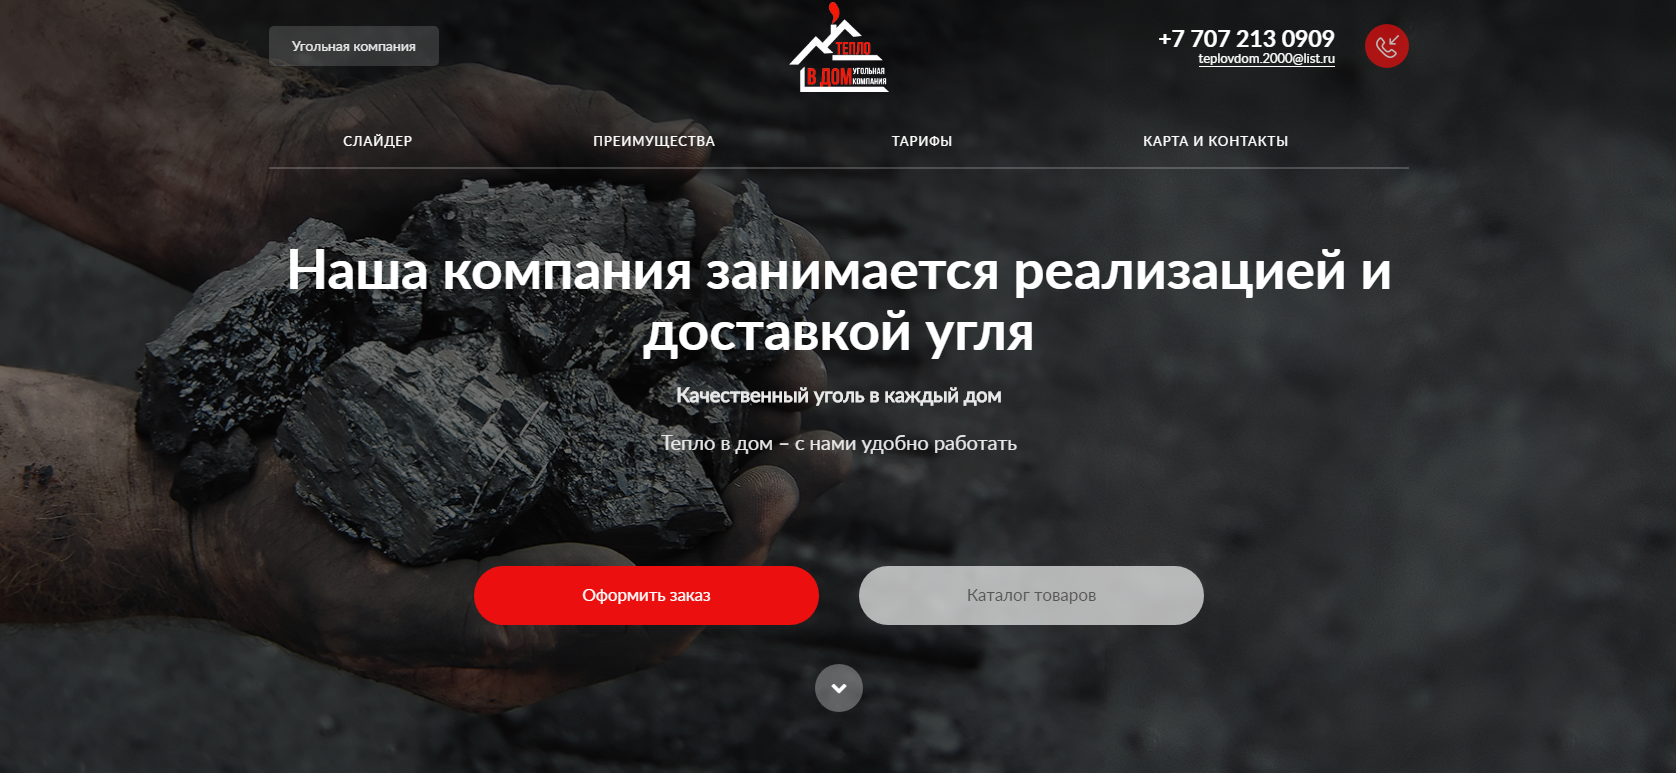 сайт доставки угля «тепло в дом»